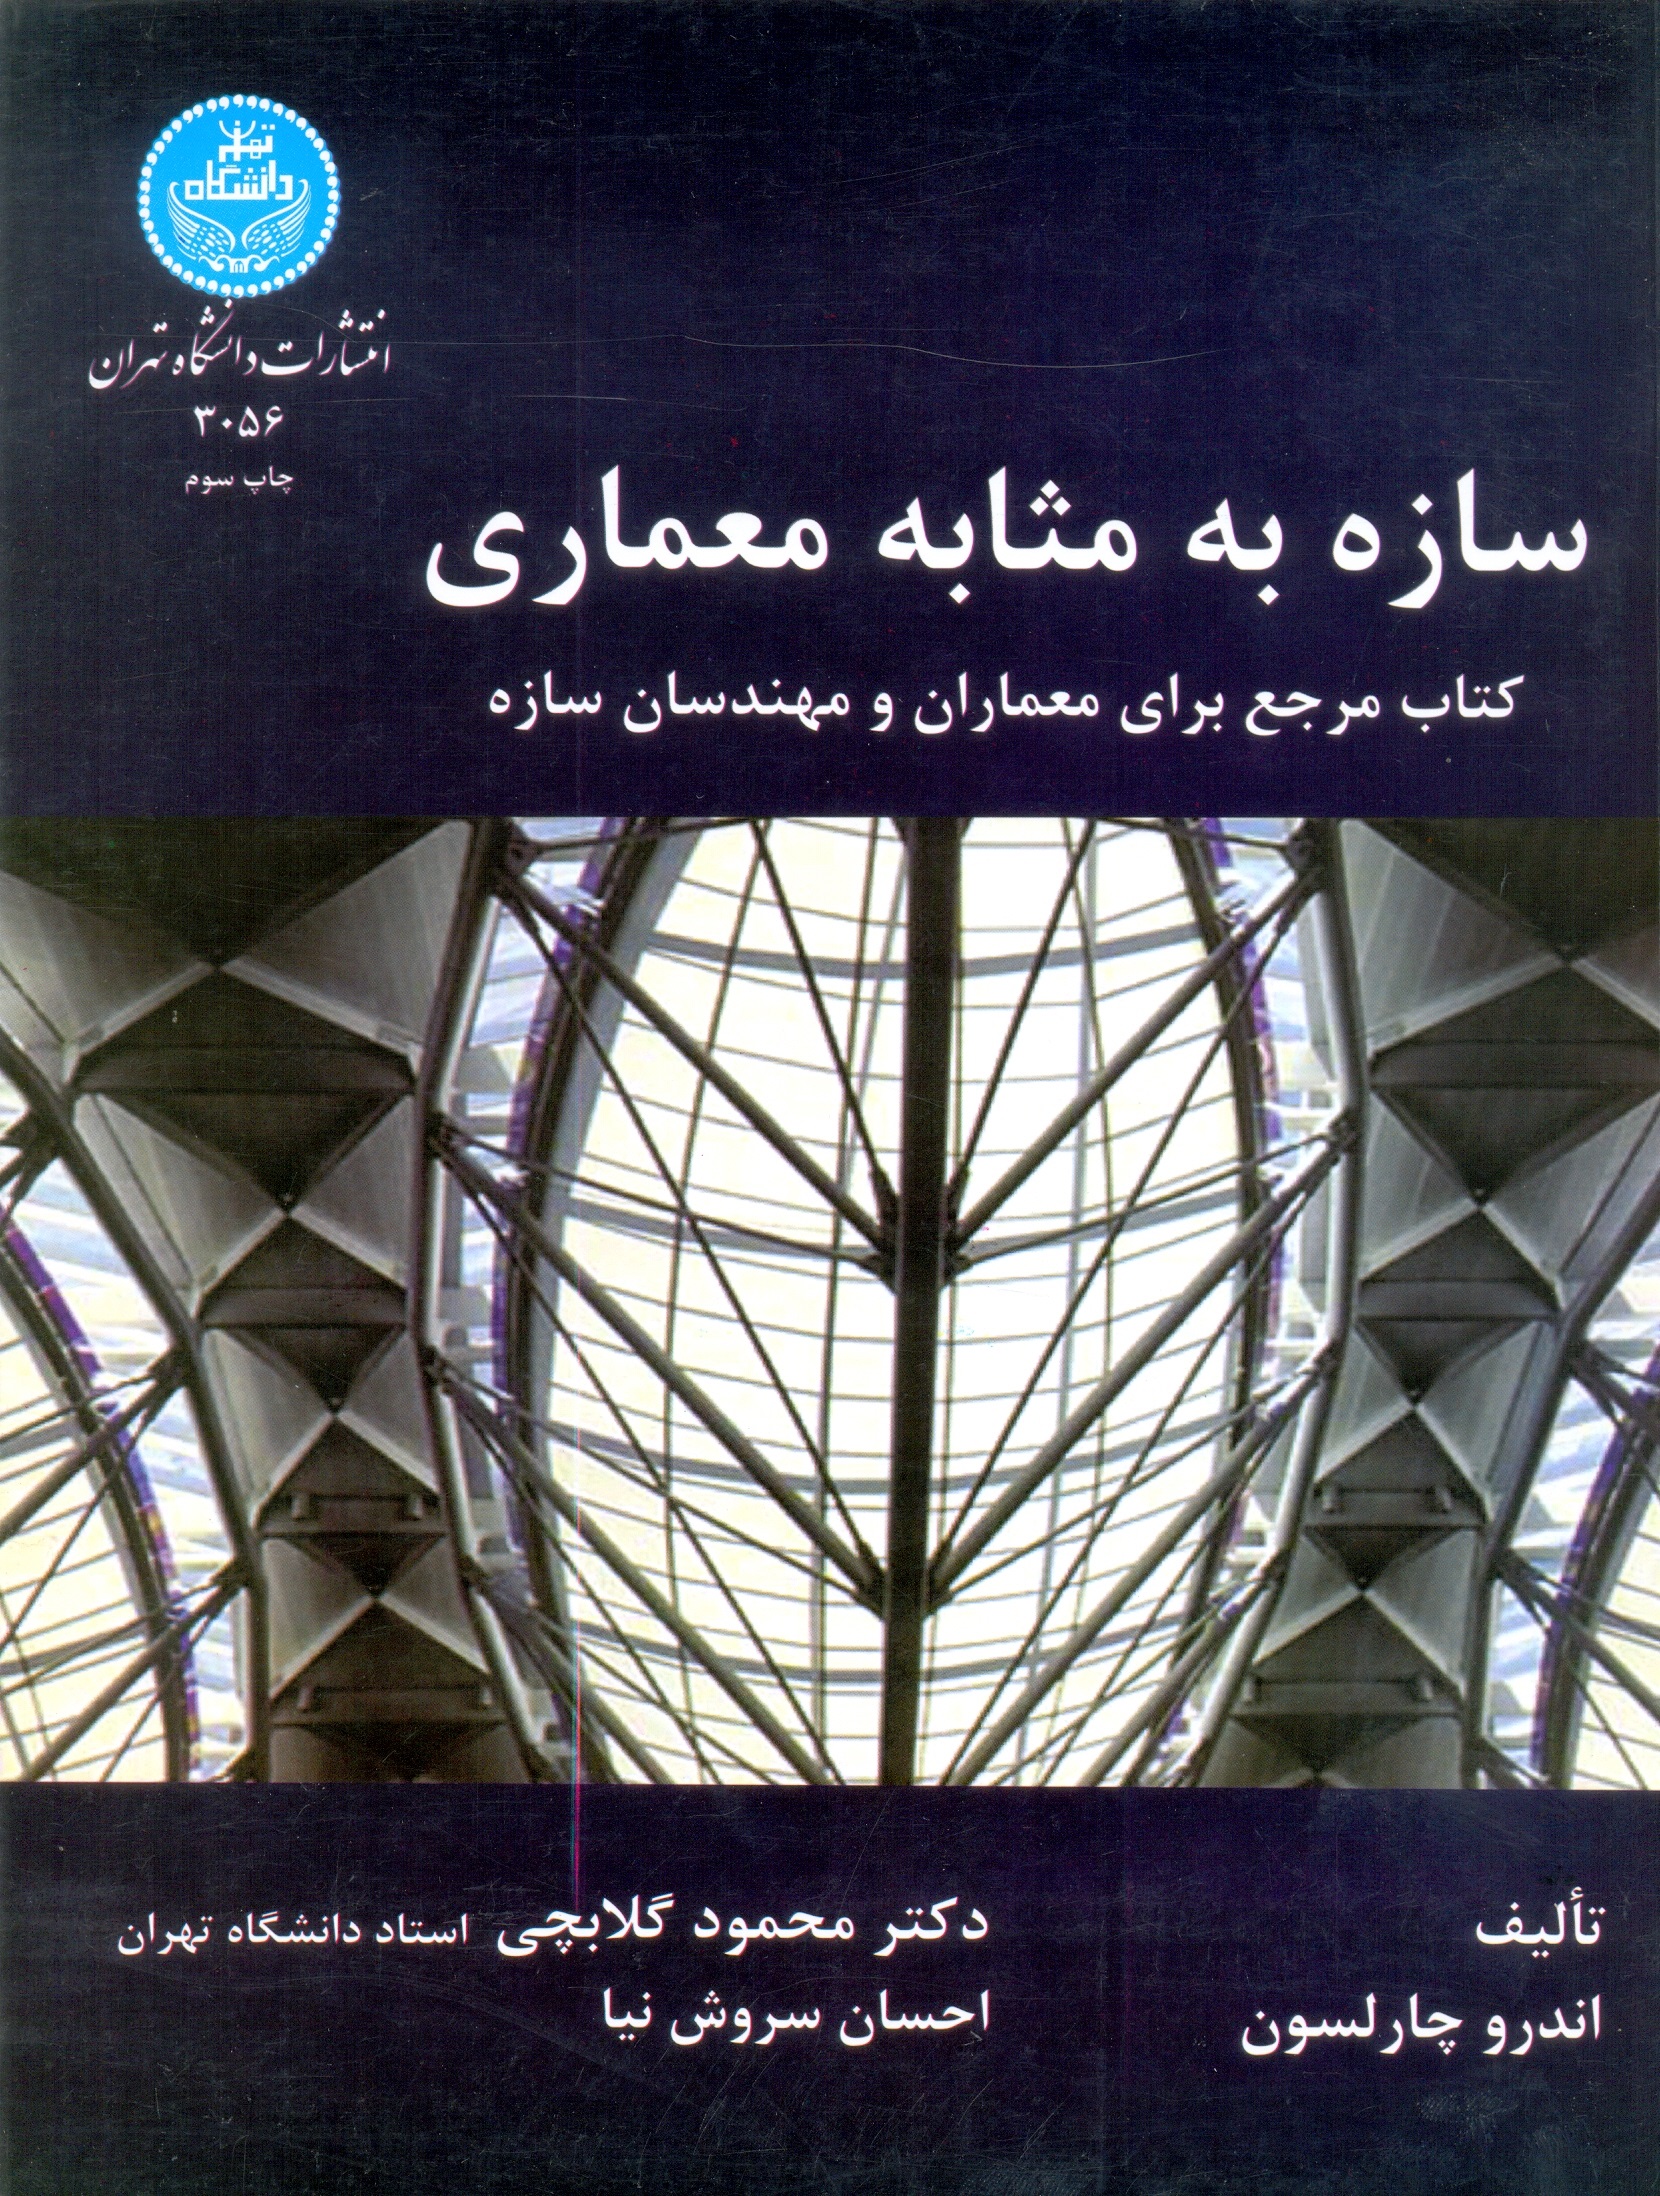 3056-سازه به مثابه معماری_گلاب چی/دا تهران